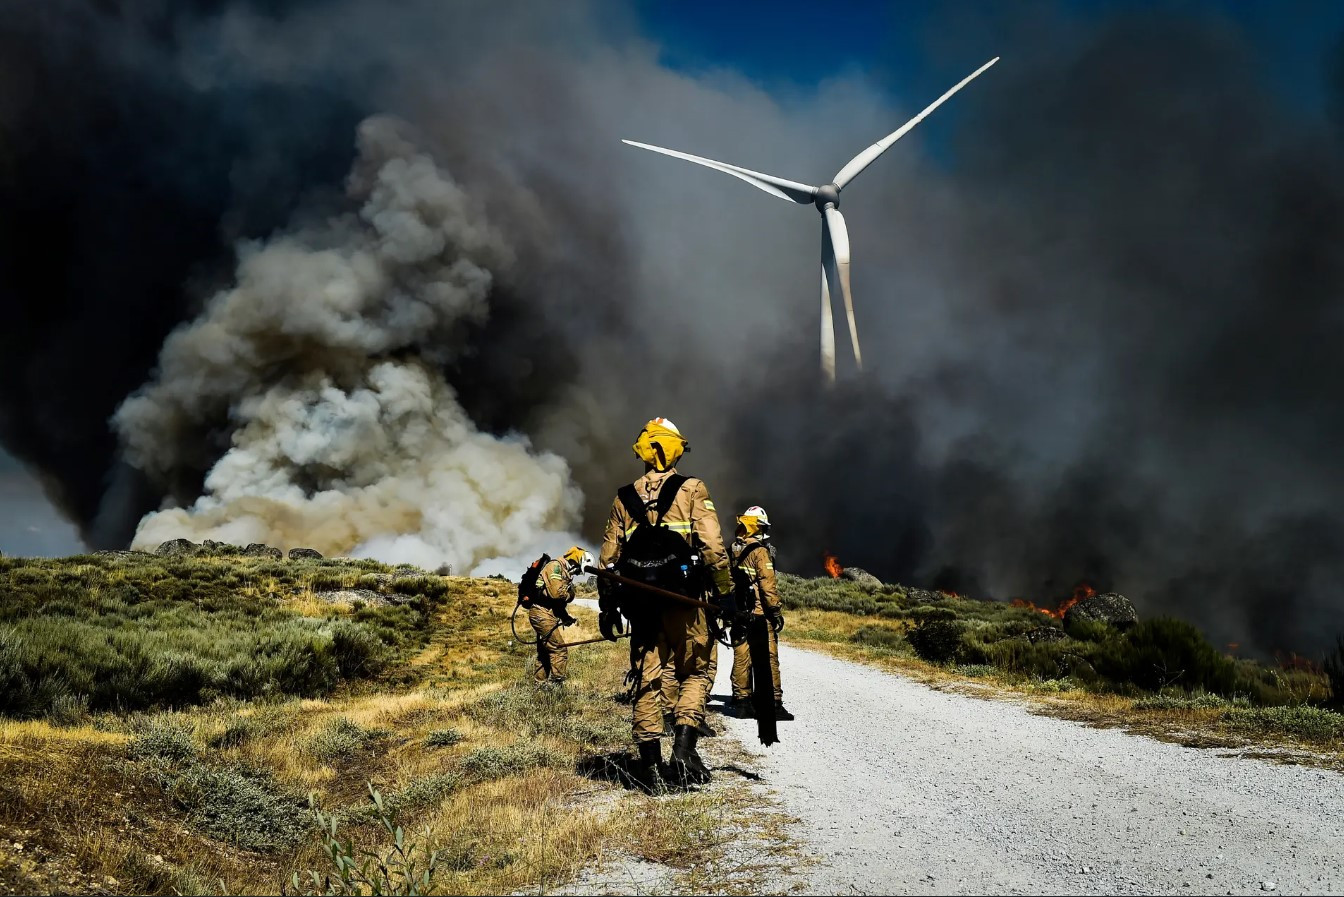 Lính cứu hỏa dập tắt đám cháy rừng ở Celorico da Beira, Guarda. Ảnh: Nuno Andre Ferreira / EPA.